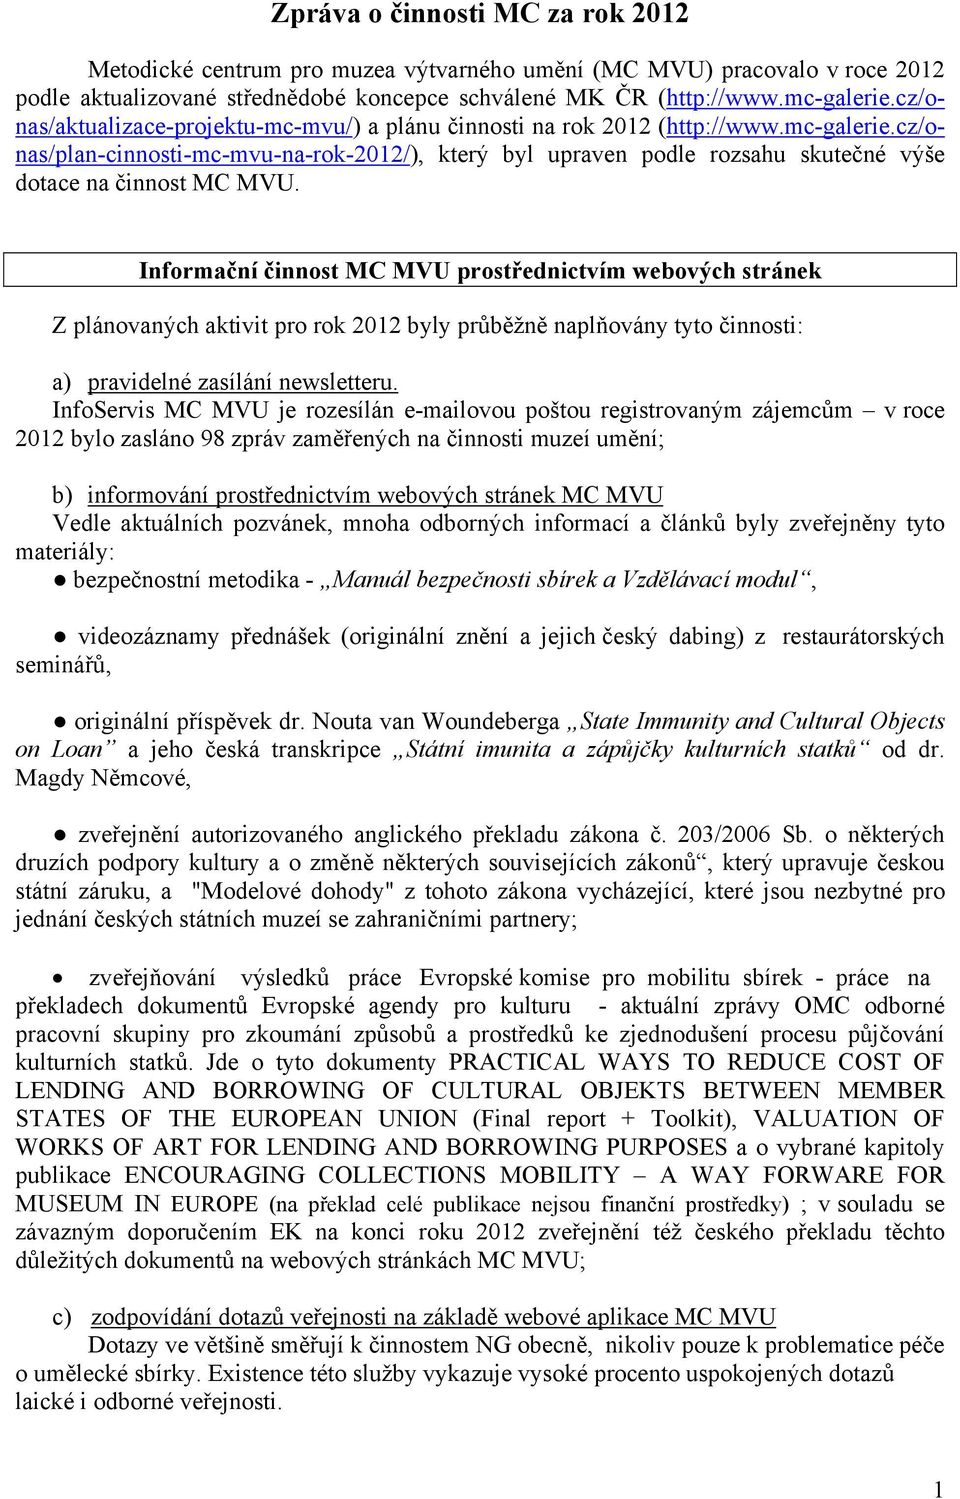 cz/onas/plan-cinnosti-mc-mvu-na-rok-2012/), který byl upraven podle rozsahu skutečné výše dotace na činnost MC MVU.